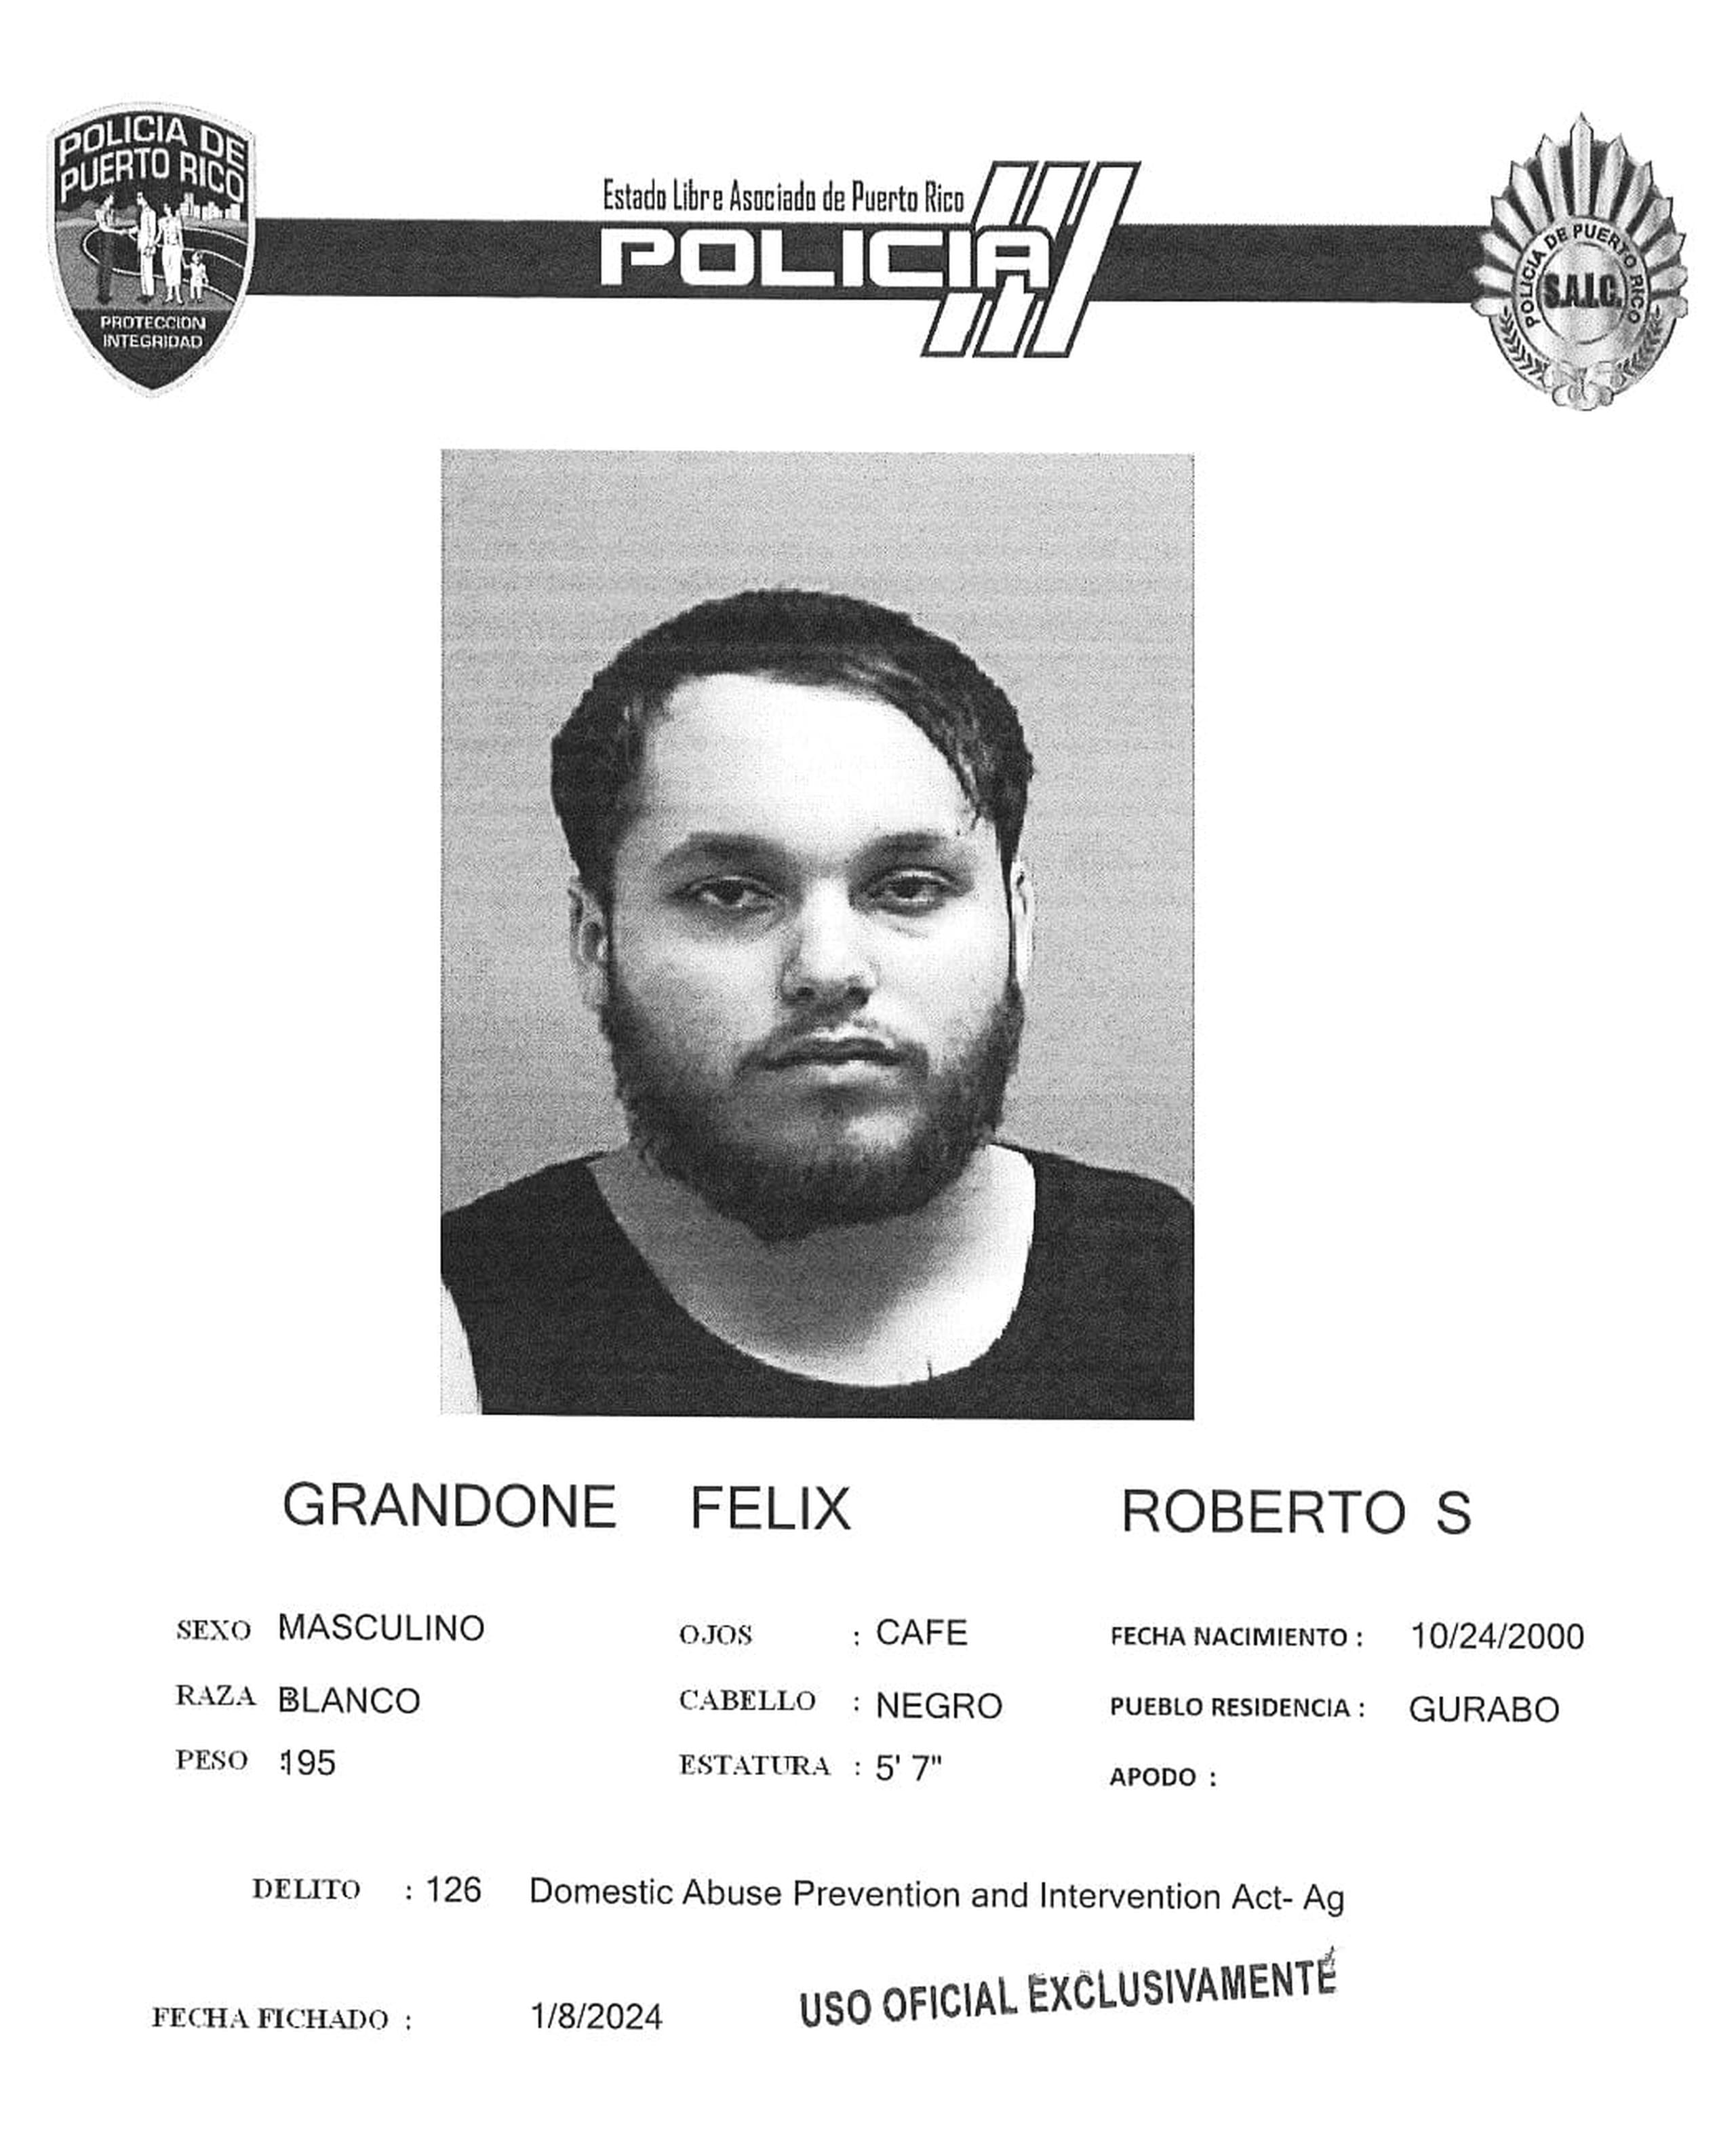 Roberto S. Grandone Félix enfrenta cargos por violencia de género.